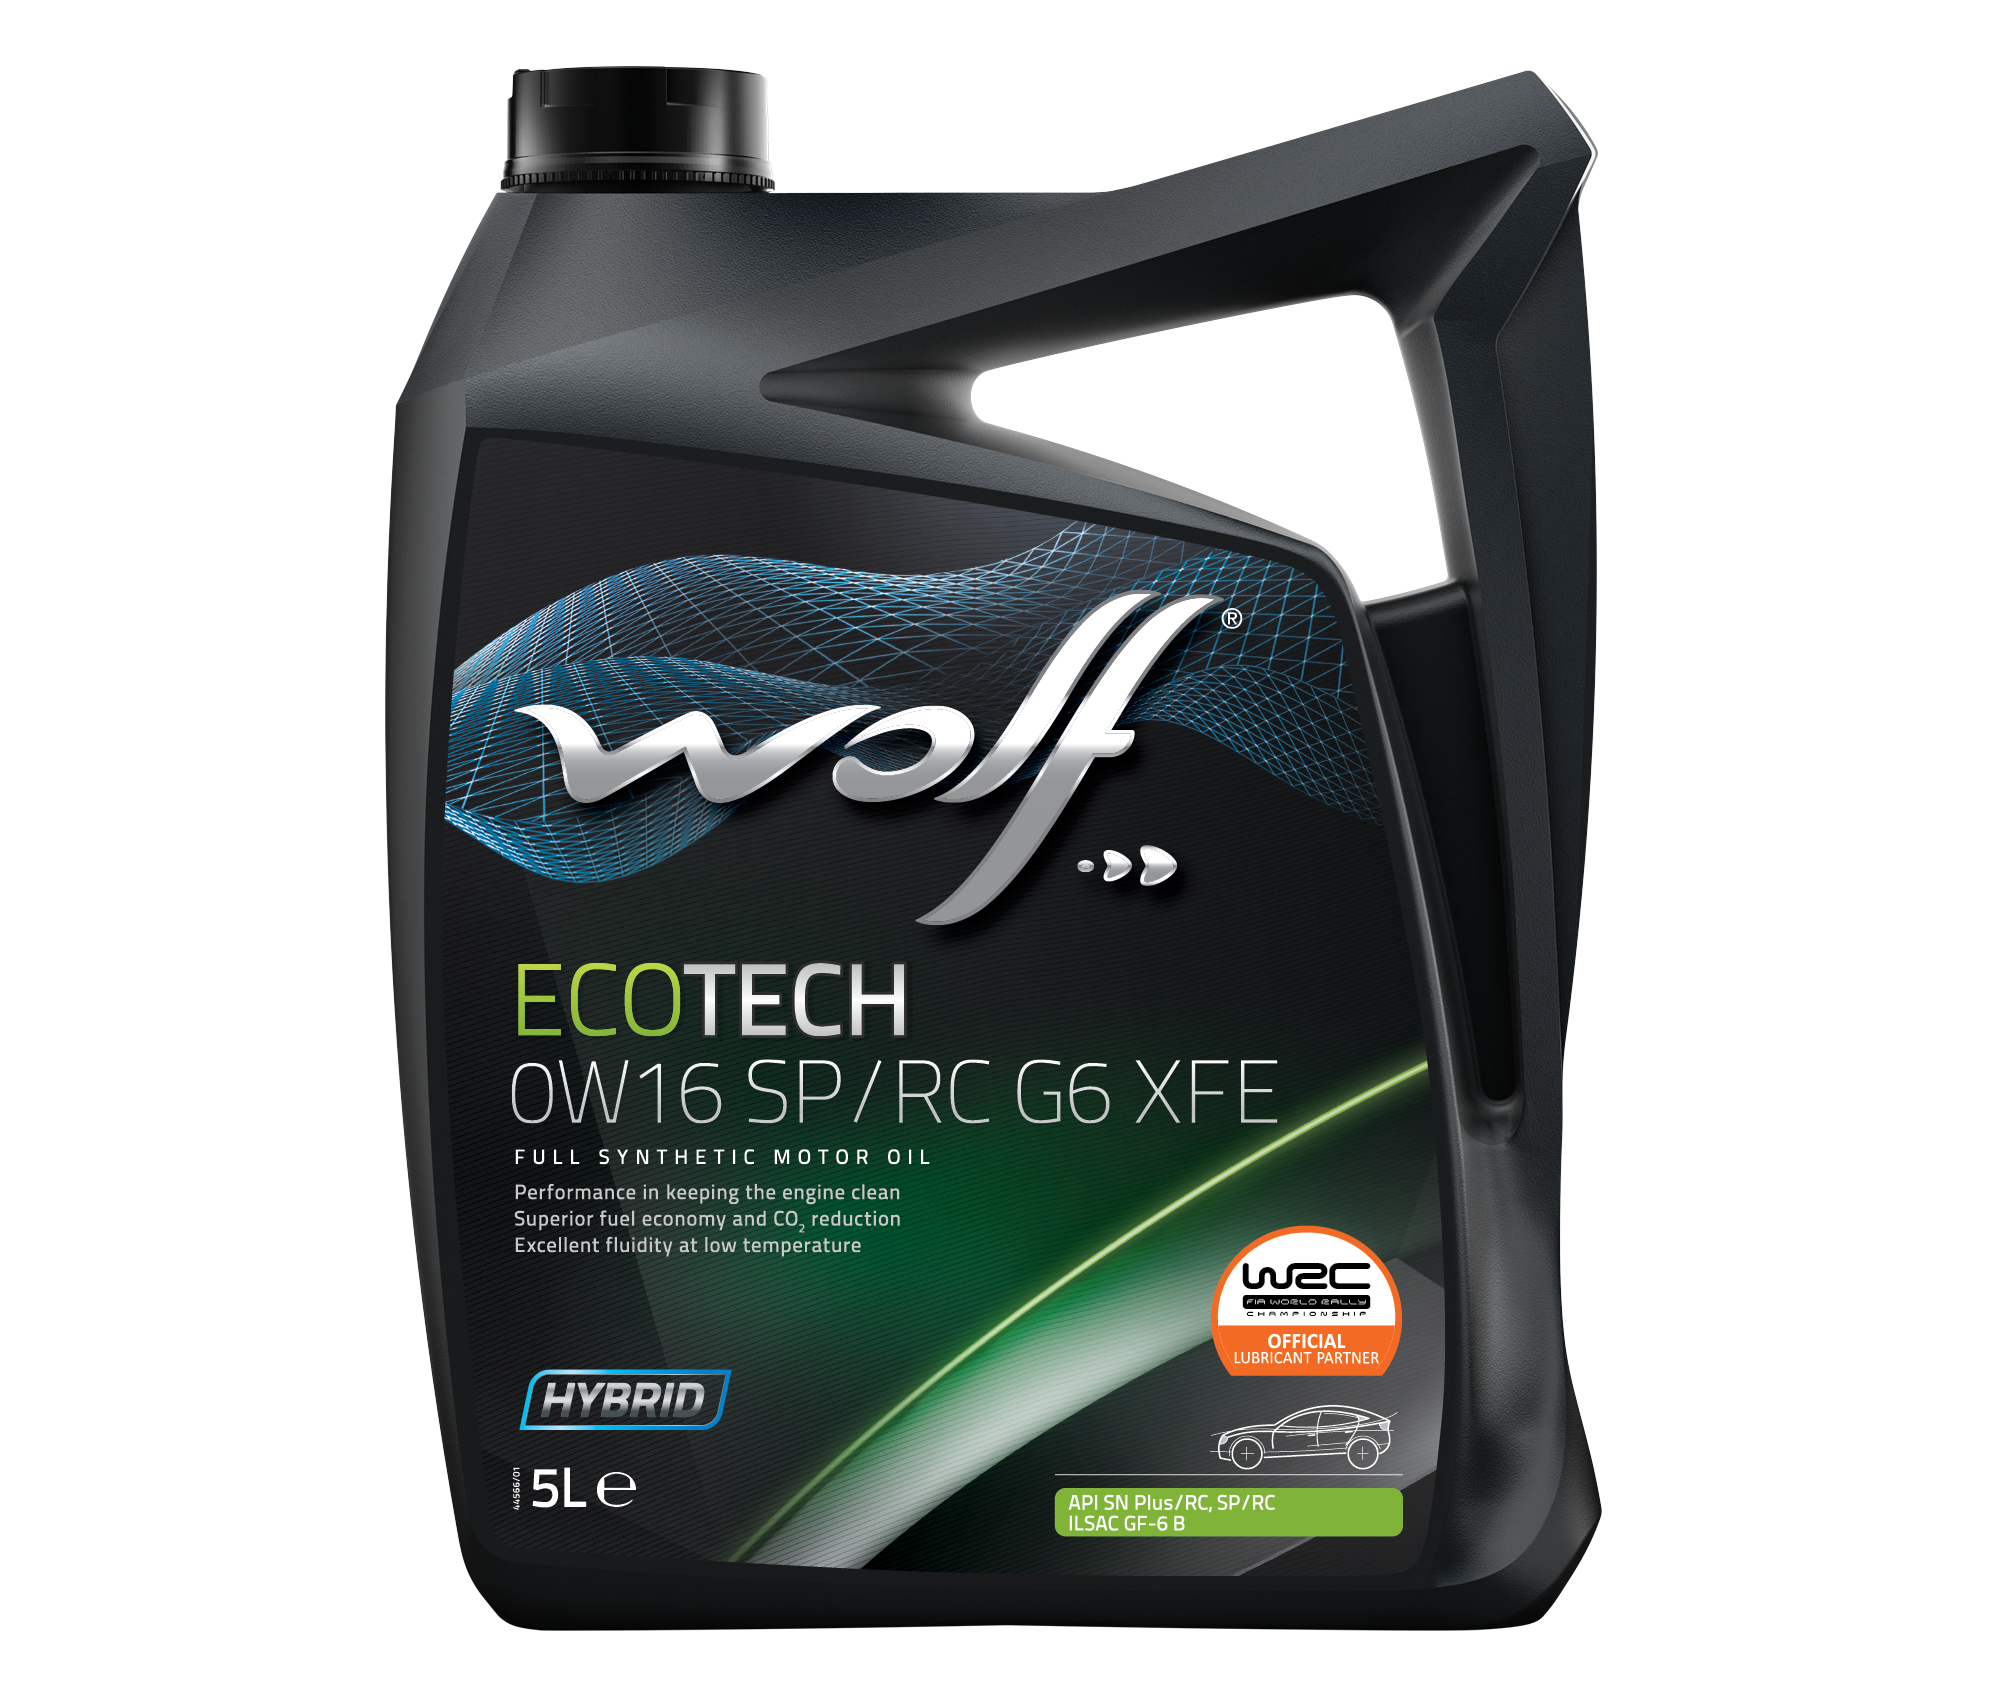 WOLF ECOTECH 0W-16 SP/RC G6 XFE